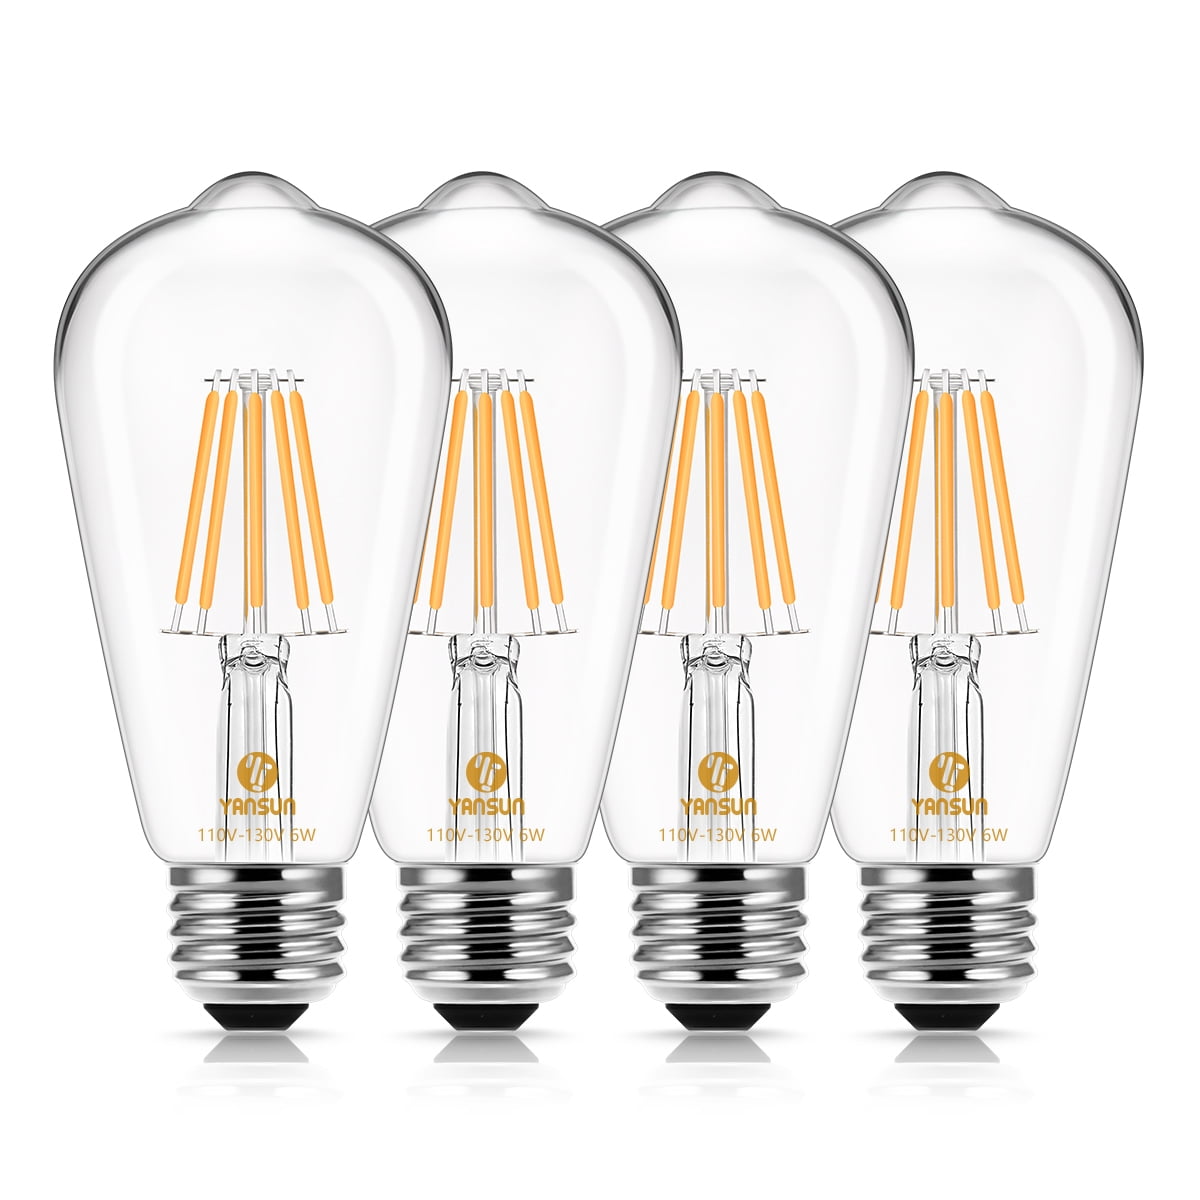 YANSUN ST58 Vintage LED Edison Bulb, Equivalent 60W, Warm White 2700K, LED Filament Light Bulb, E26 Base Pendant, Chandeliers and Decorative Fixtures, 4 Pack - Walmart.com